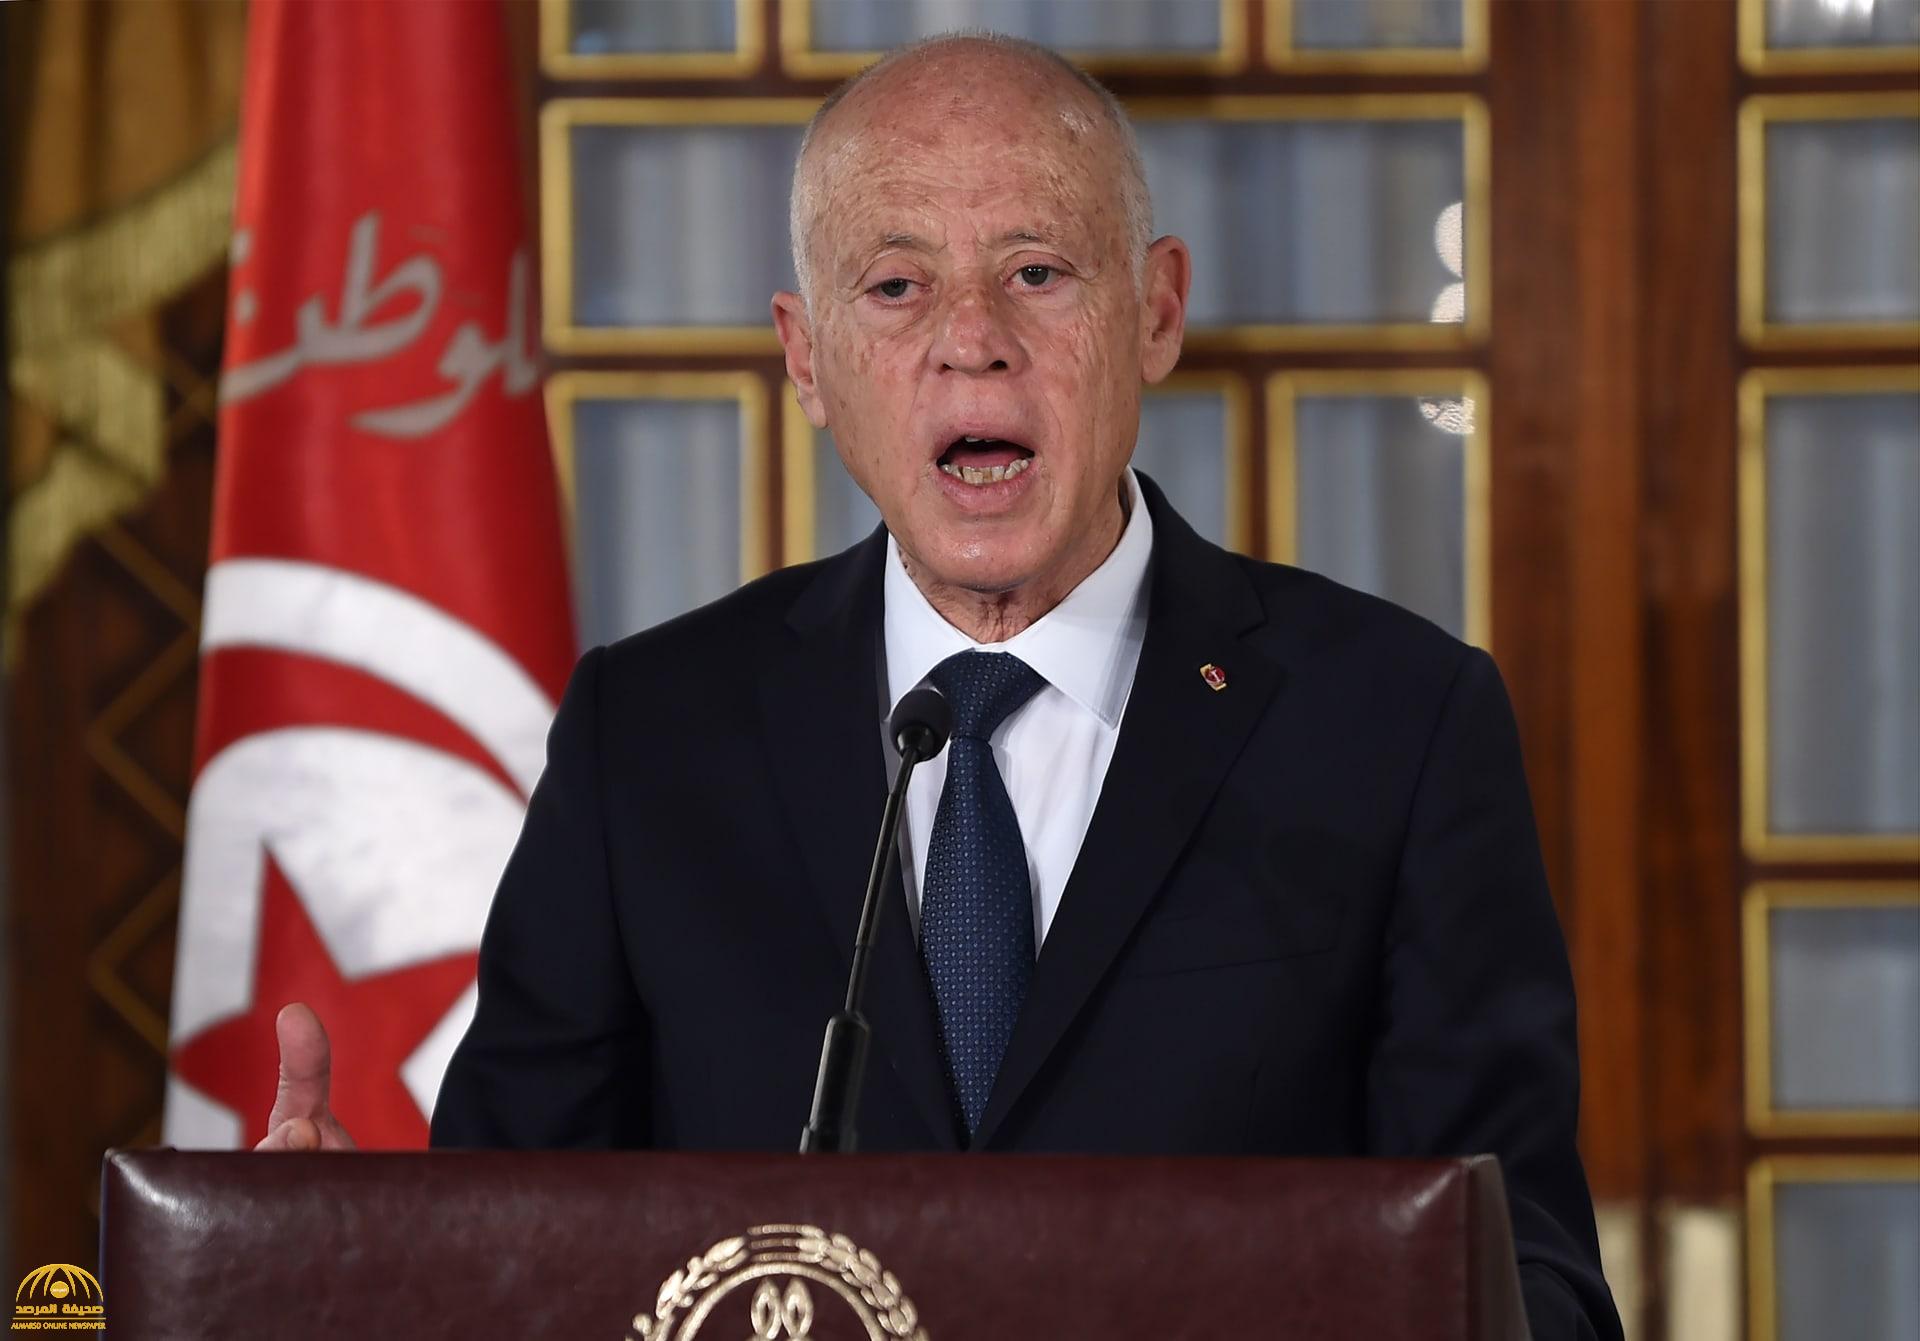 شاهد: الرئيس التونسي يعلن إقالة رئيس الوزراء “المشيشي” من منصبه ويرفع الحصانة عن النواب